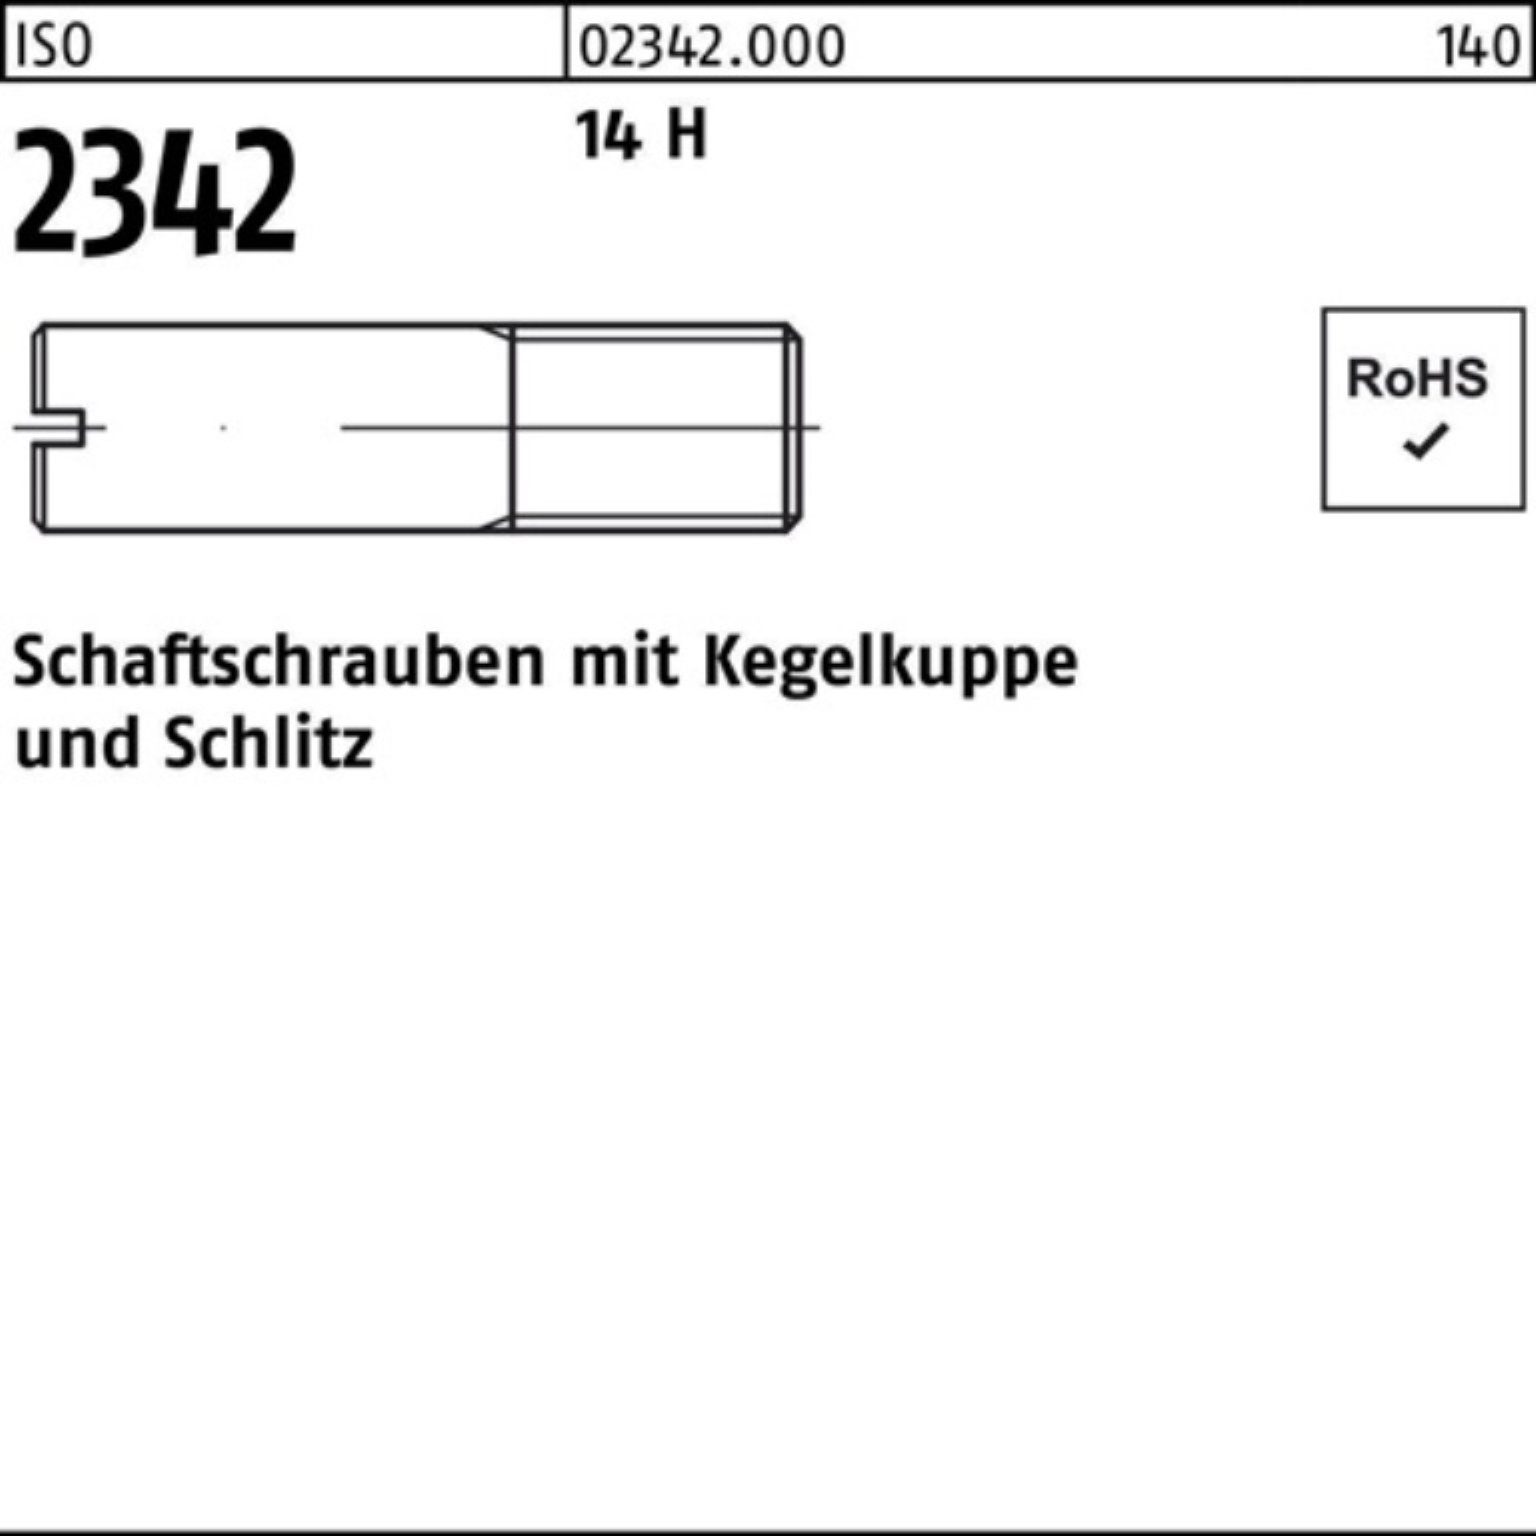 100er 50 25 Schaftschraube Reyher 2342 14 M10x Kegelkuppe/Schlitz ISO H Schraube Pack